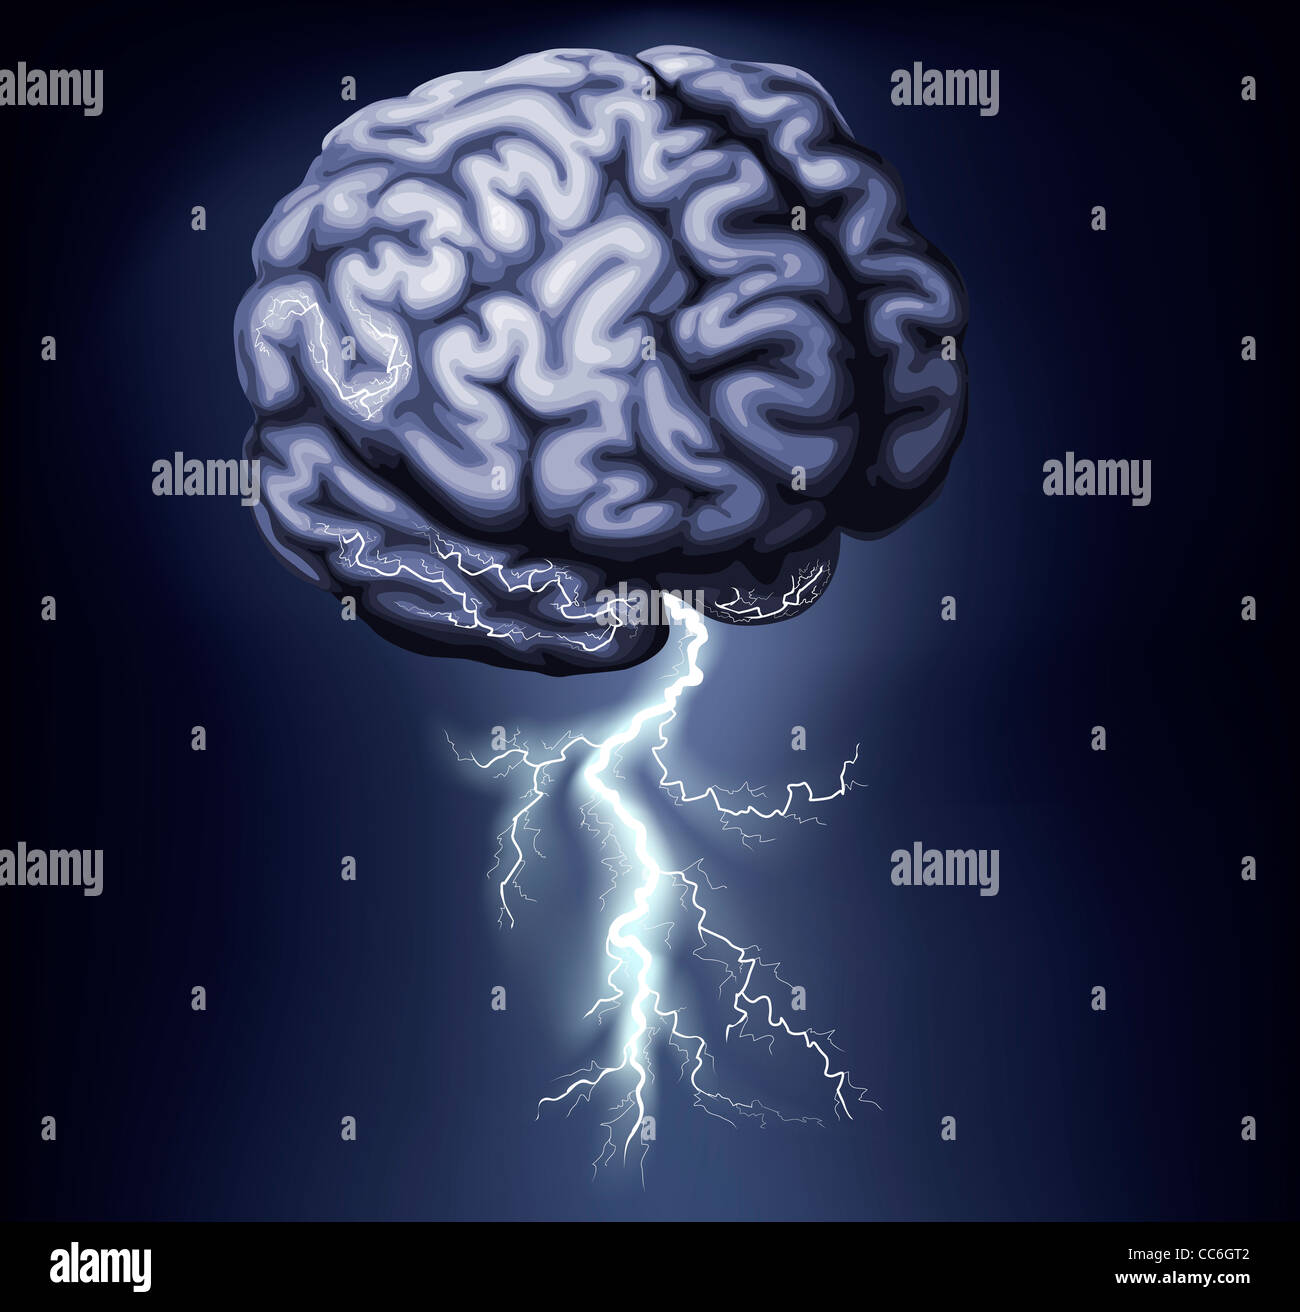 Abbildung des Gehirns mit dem Blitz kommen aus ihm heraus. Konzept für ein Brainstorming Stockfoto